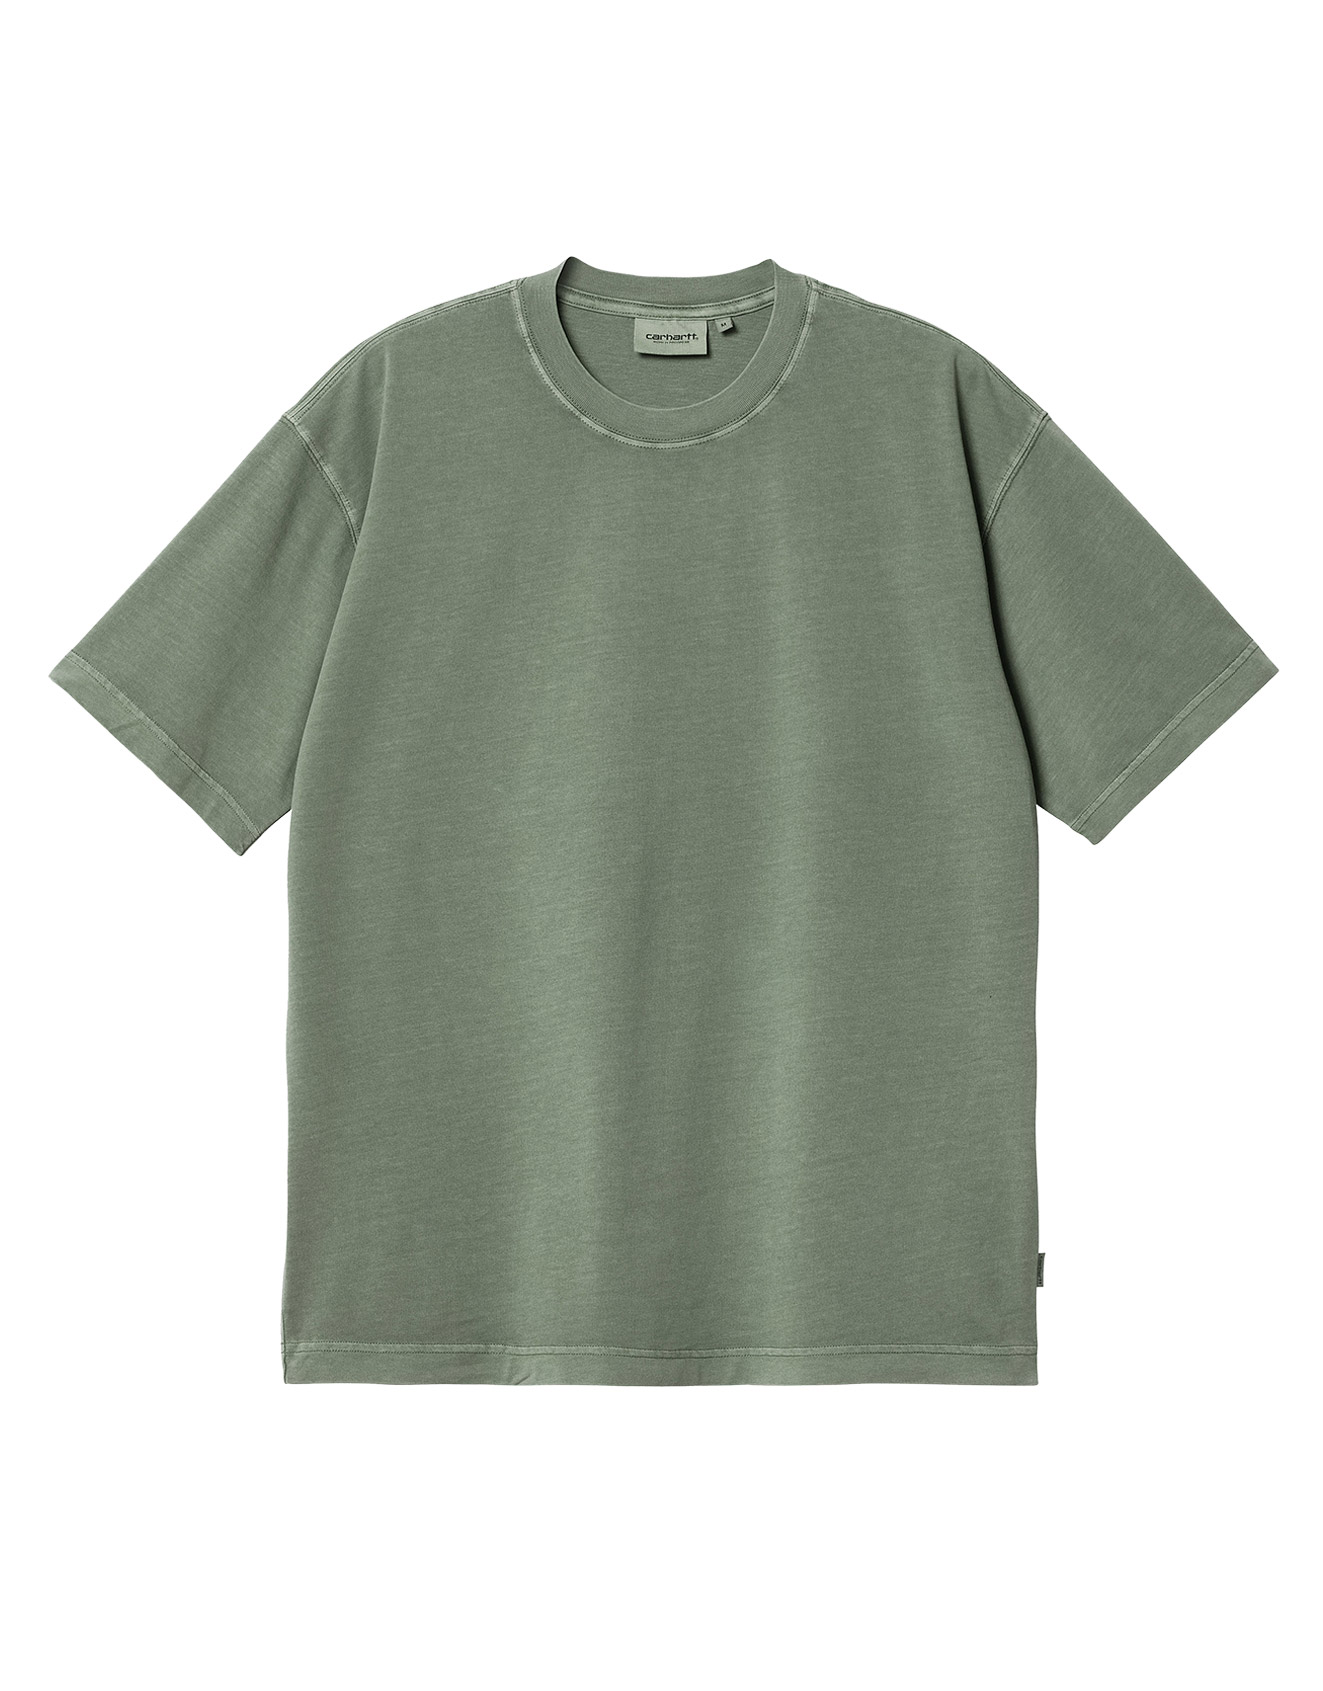 Carhartt WIP – S/S Dune T-shirt